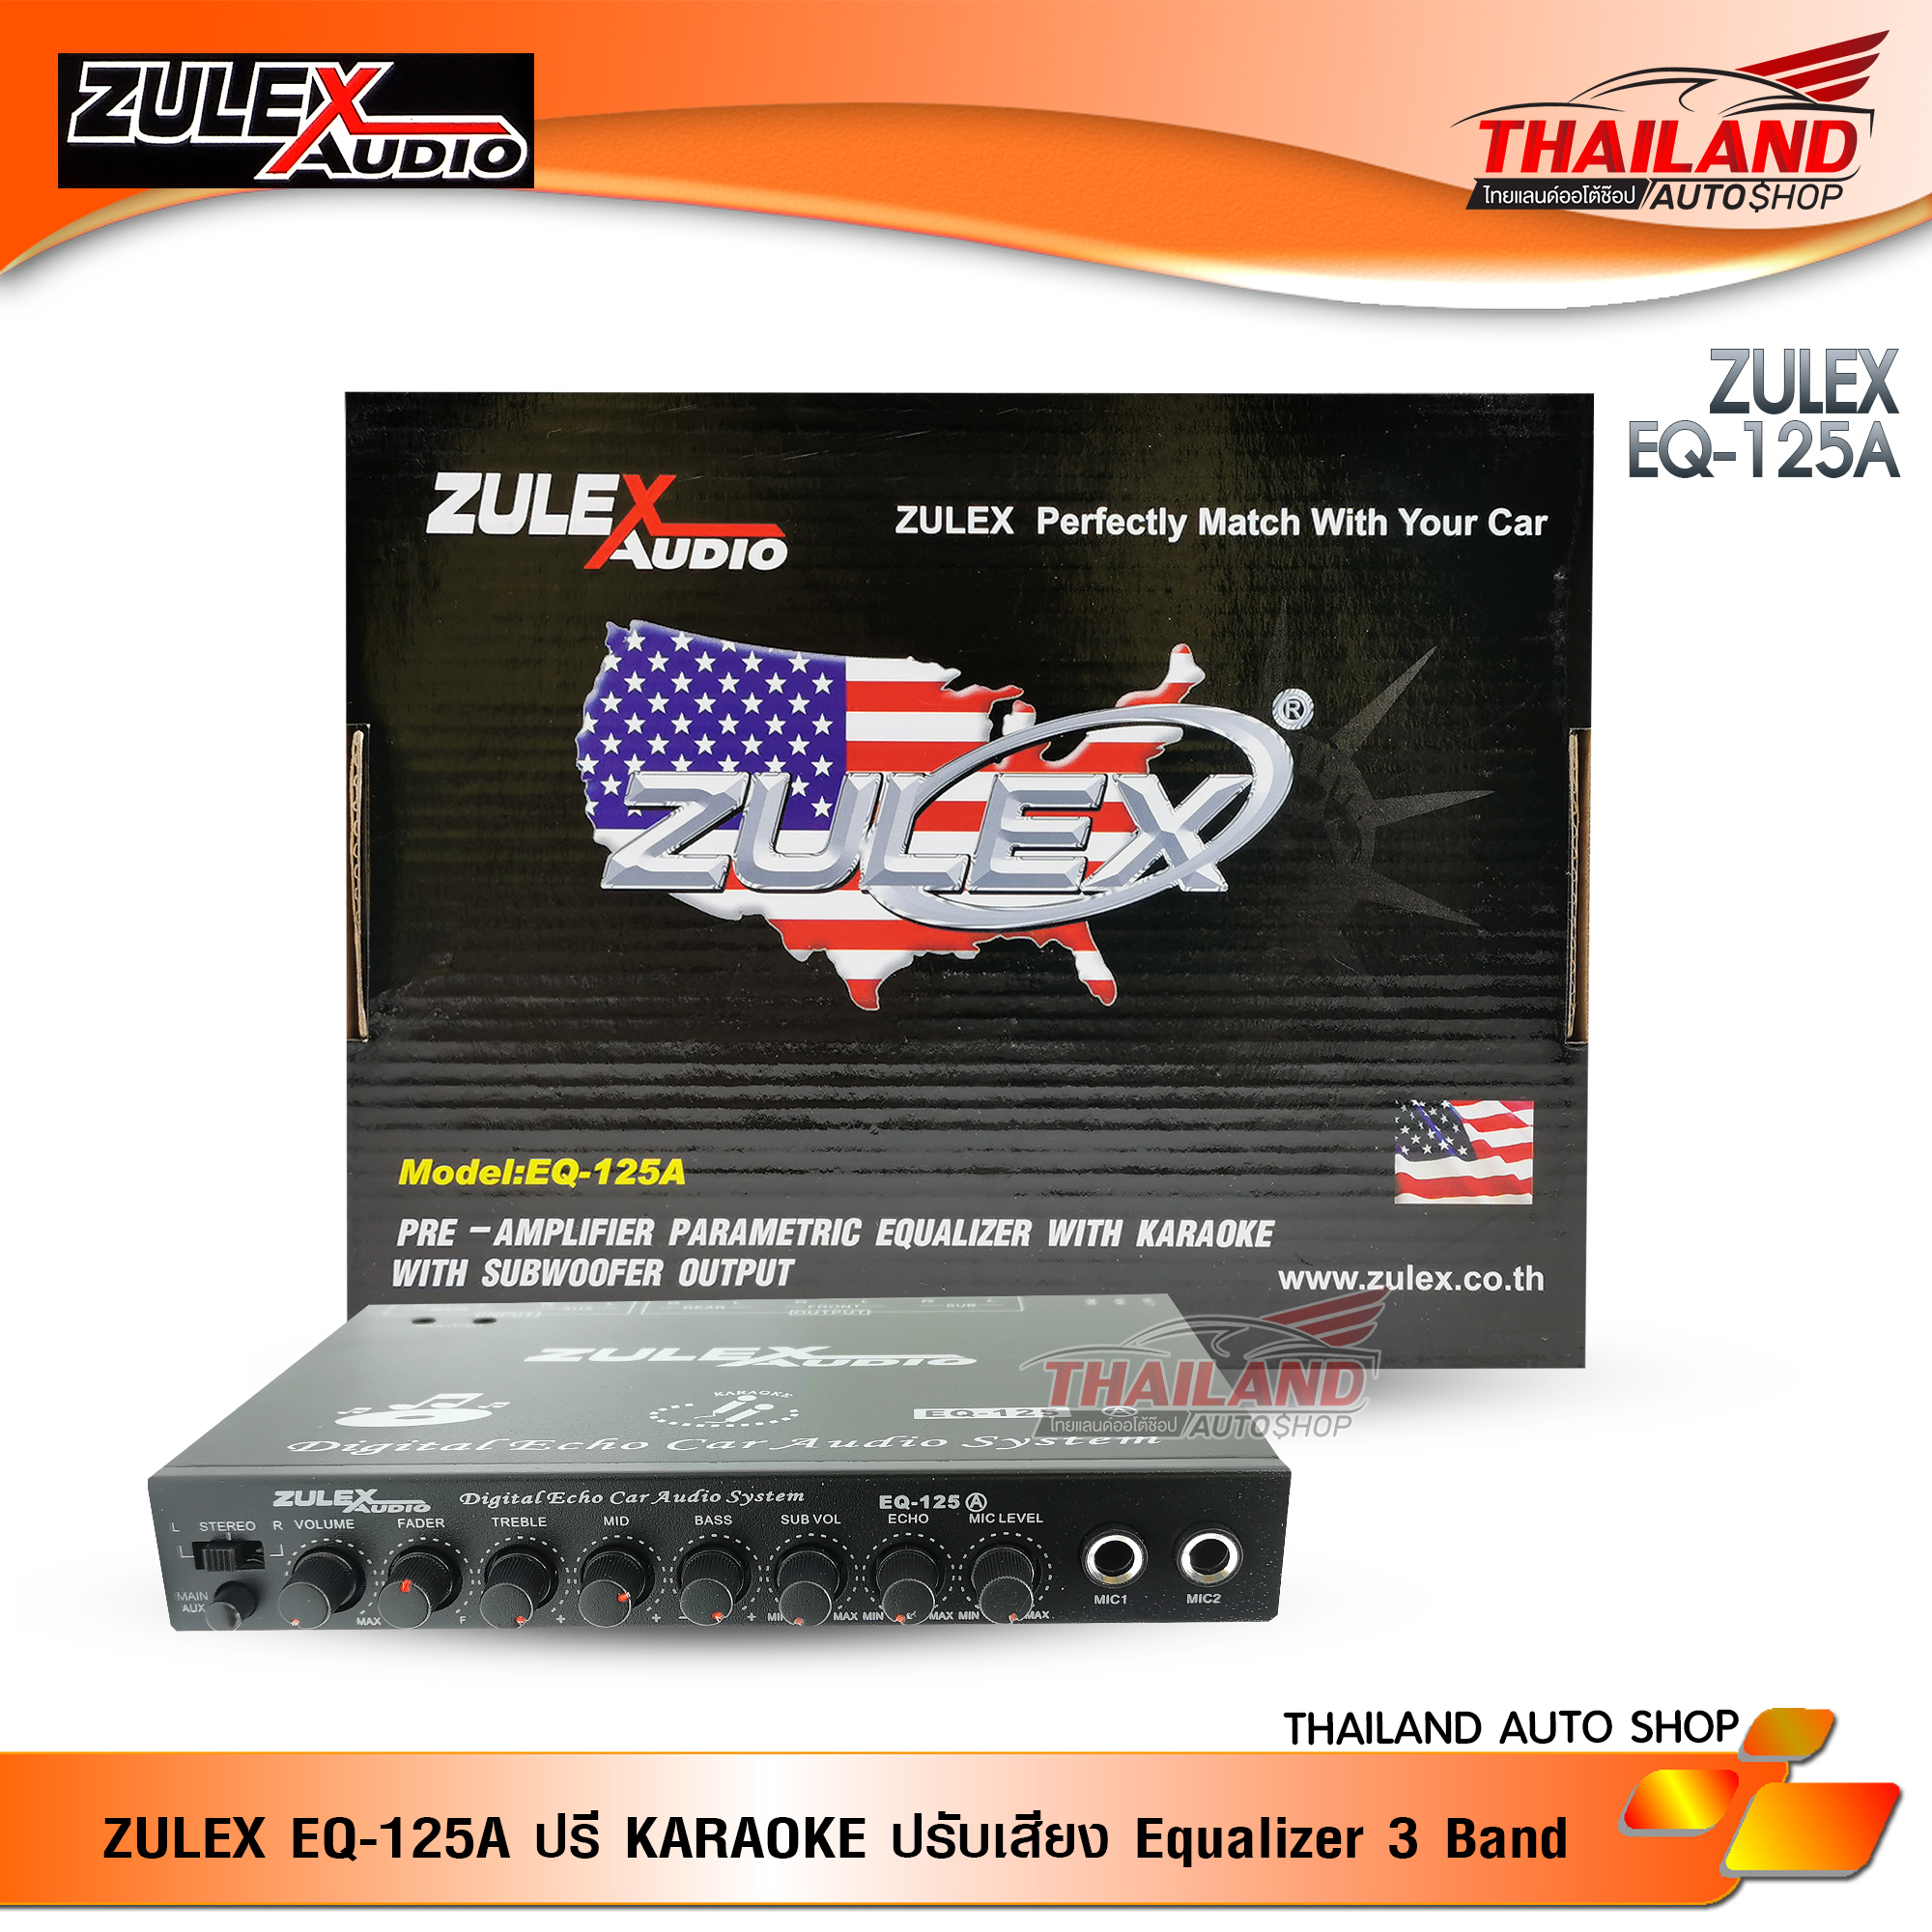 ZULEX EQ-125A ปรี KARAOKE คุณภาพดี ปรับเสียง Equalizer 3 Band ช่องต่อไมค์โครโฟน 2 ช่อง มีปุ่มโวลุ่ม และปุ่มปรับเสียง Echo